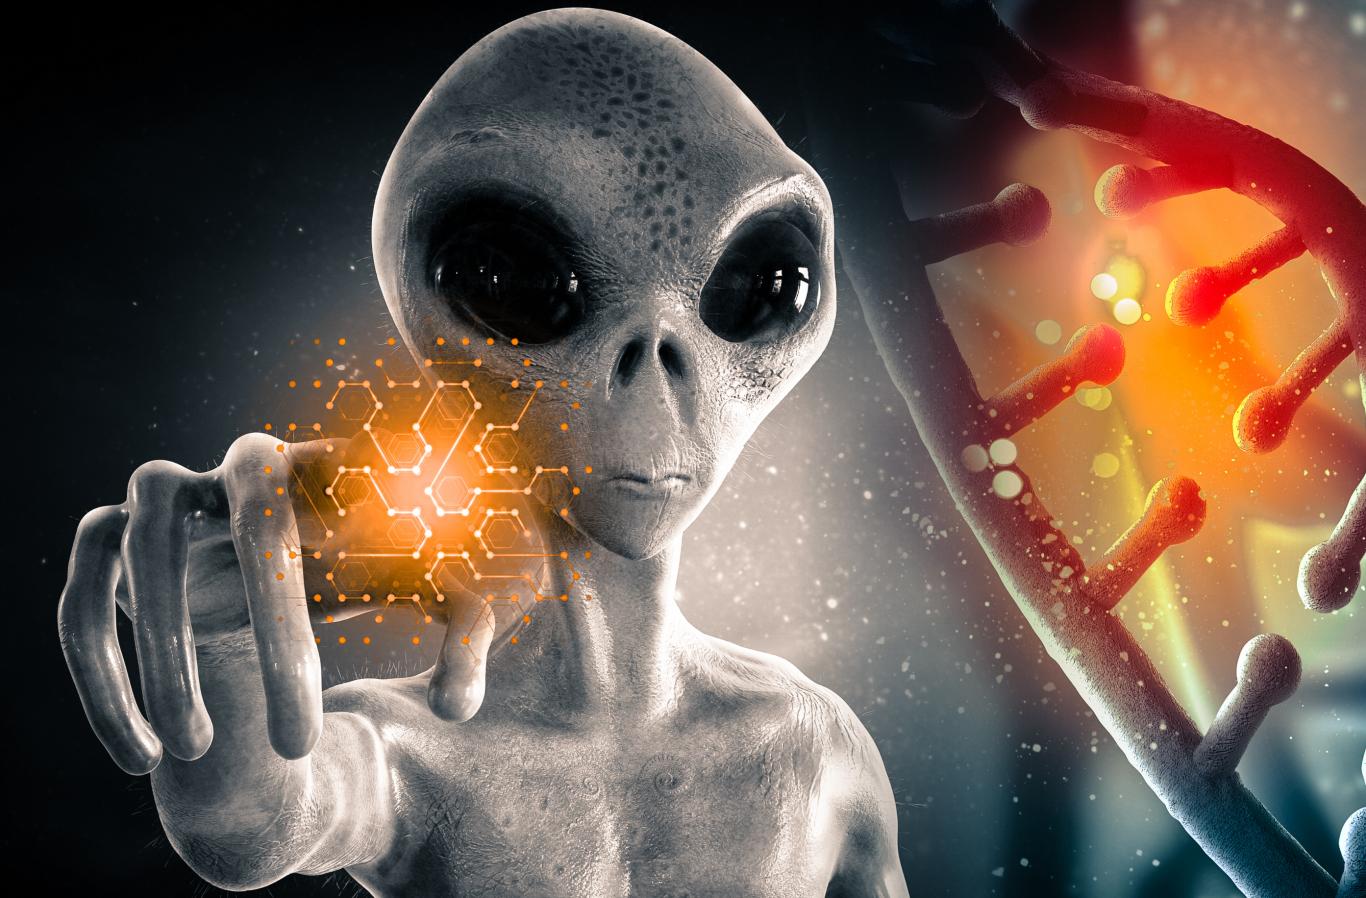 L-extraterrestri għamlu inġinier ġenetiku għall-Homo sapiens 780,000 sena ilu? 1